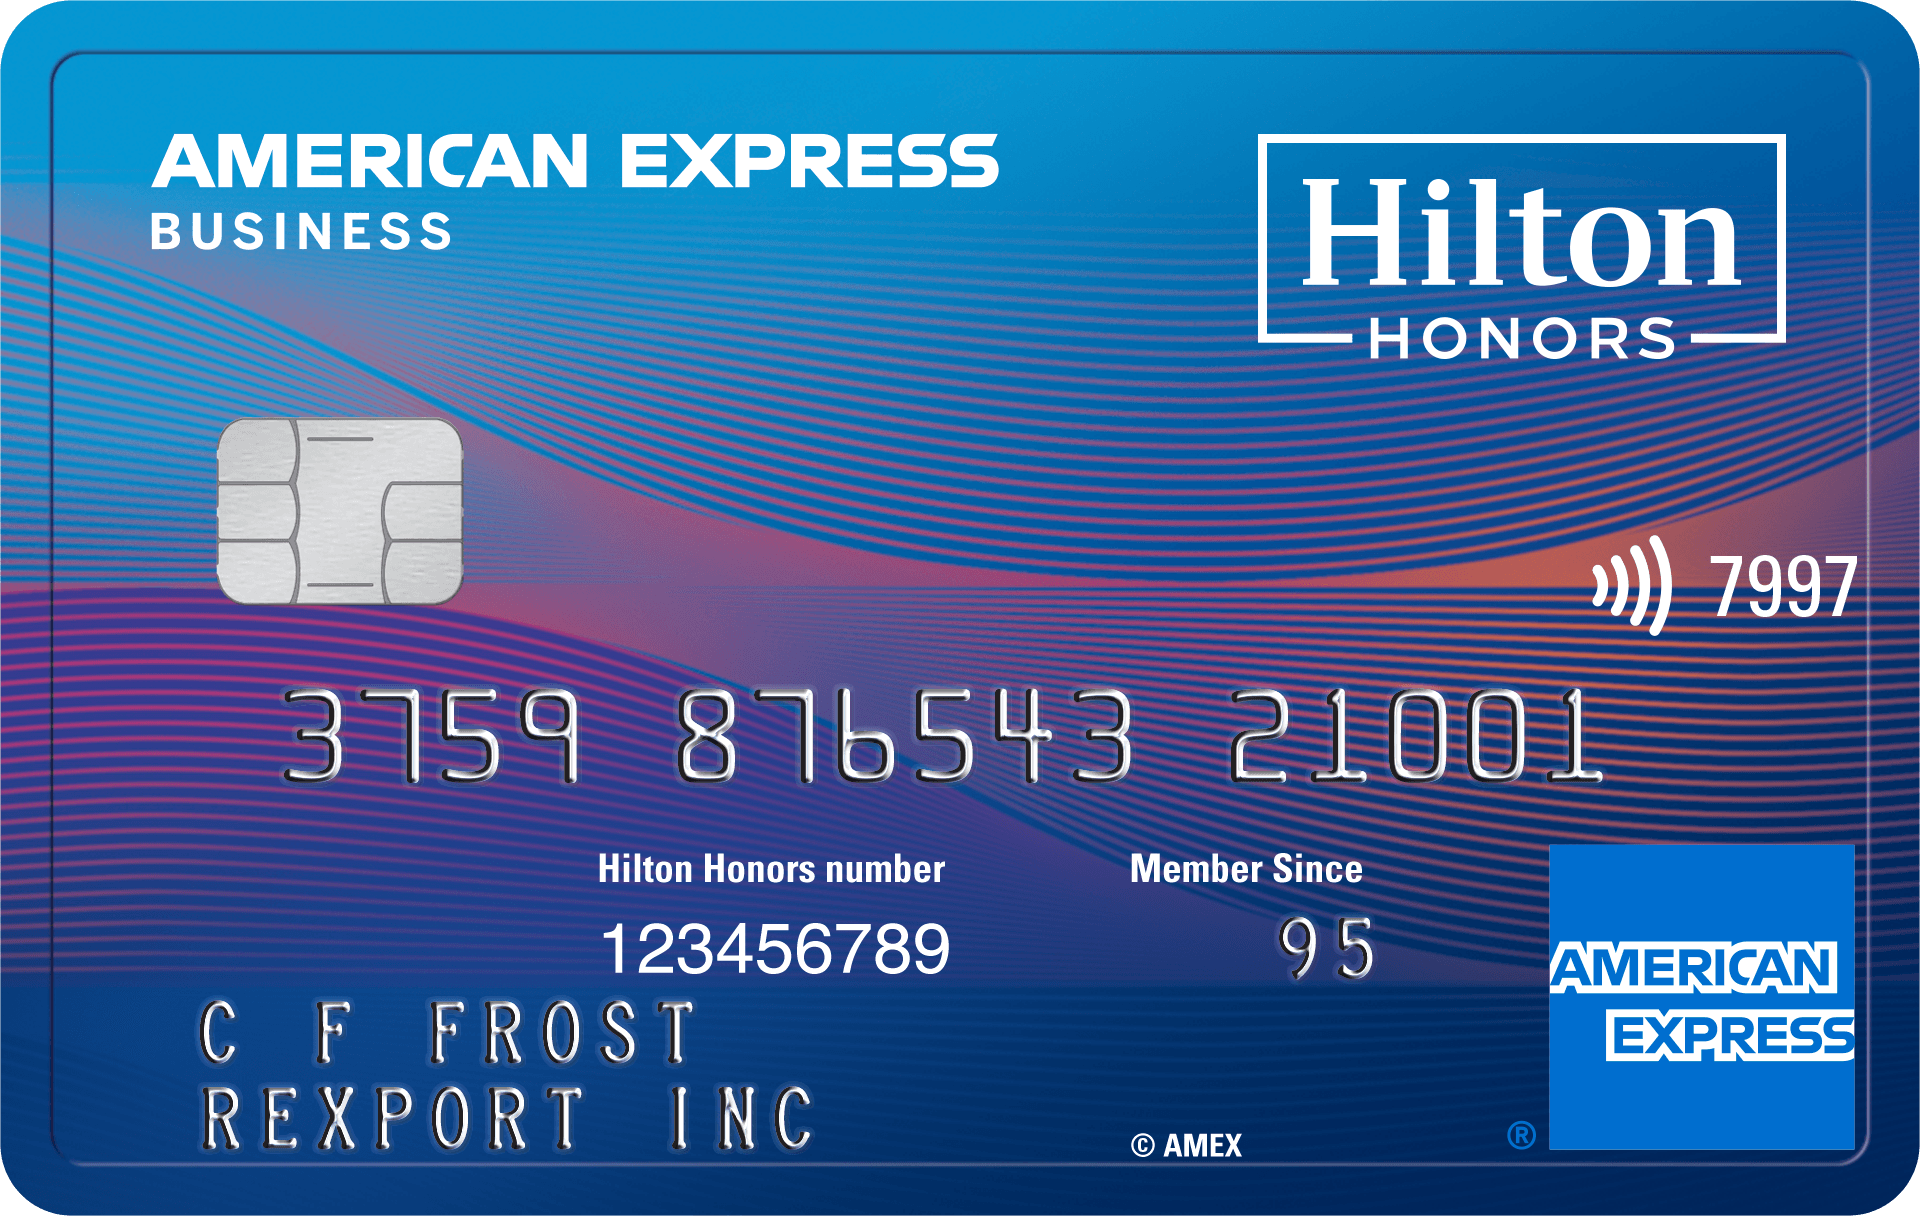 Hilton Honors Business Card habilitado para chip, sem contato para pagar